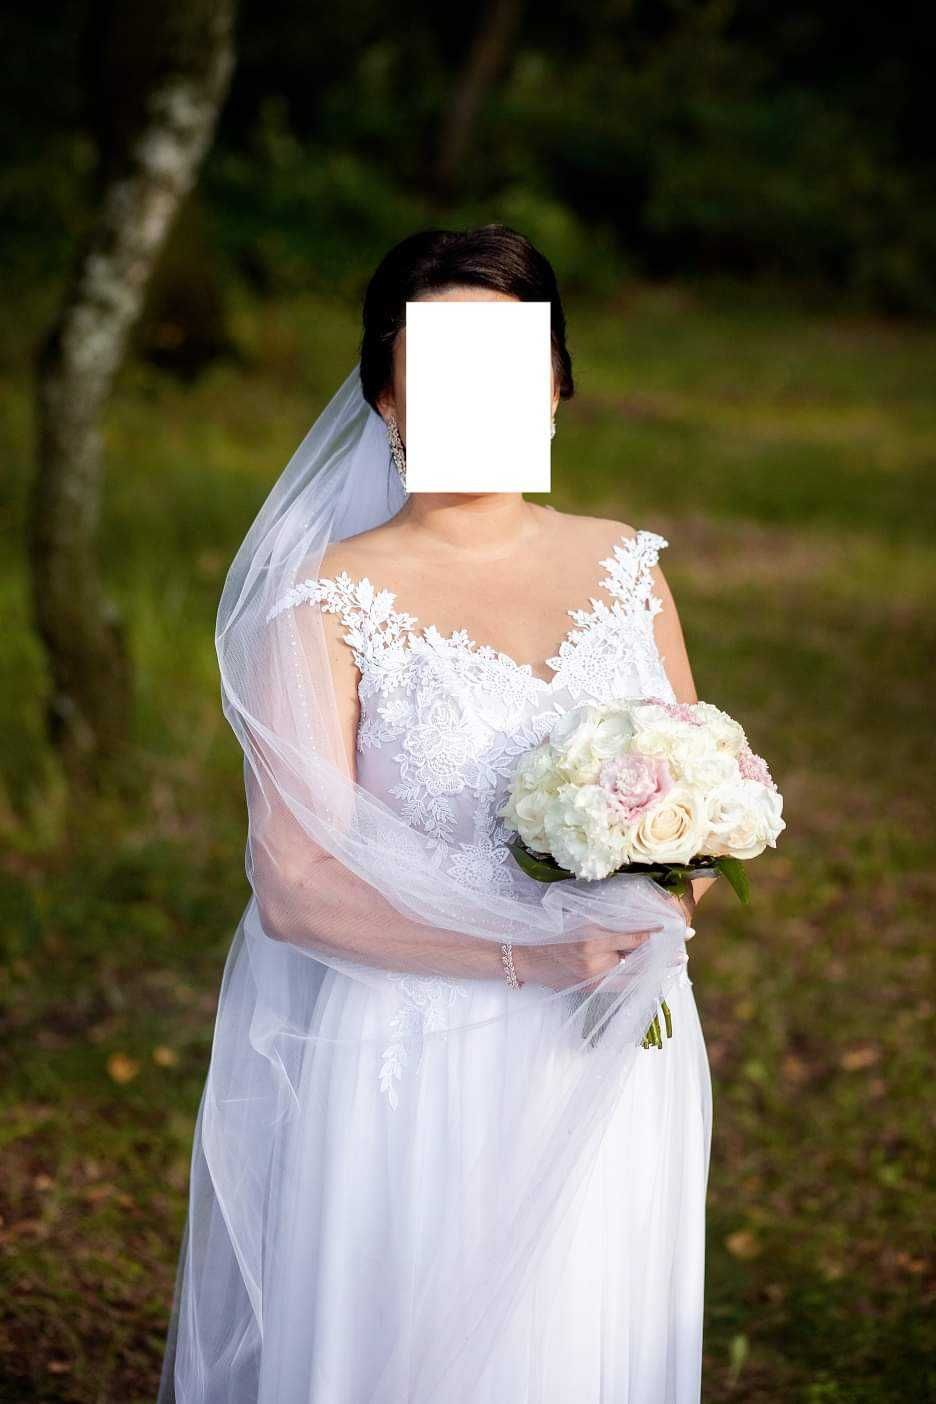 Suknia ślubna biała z welonem